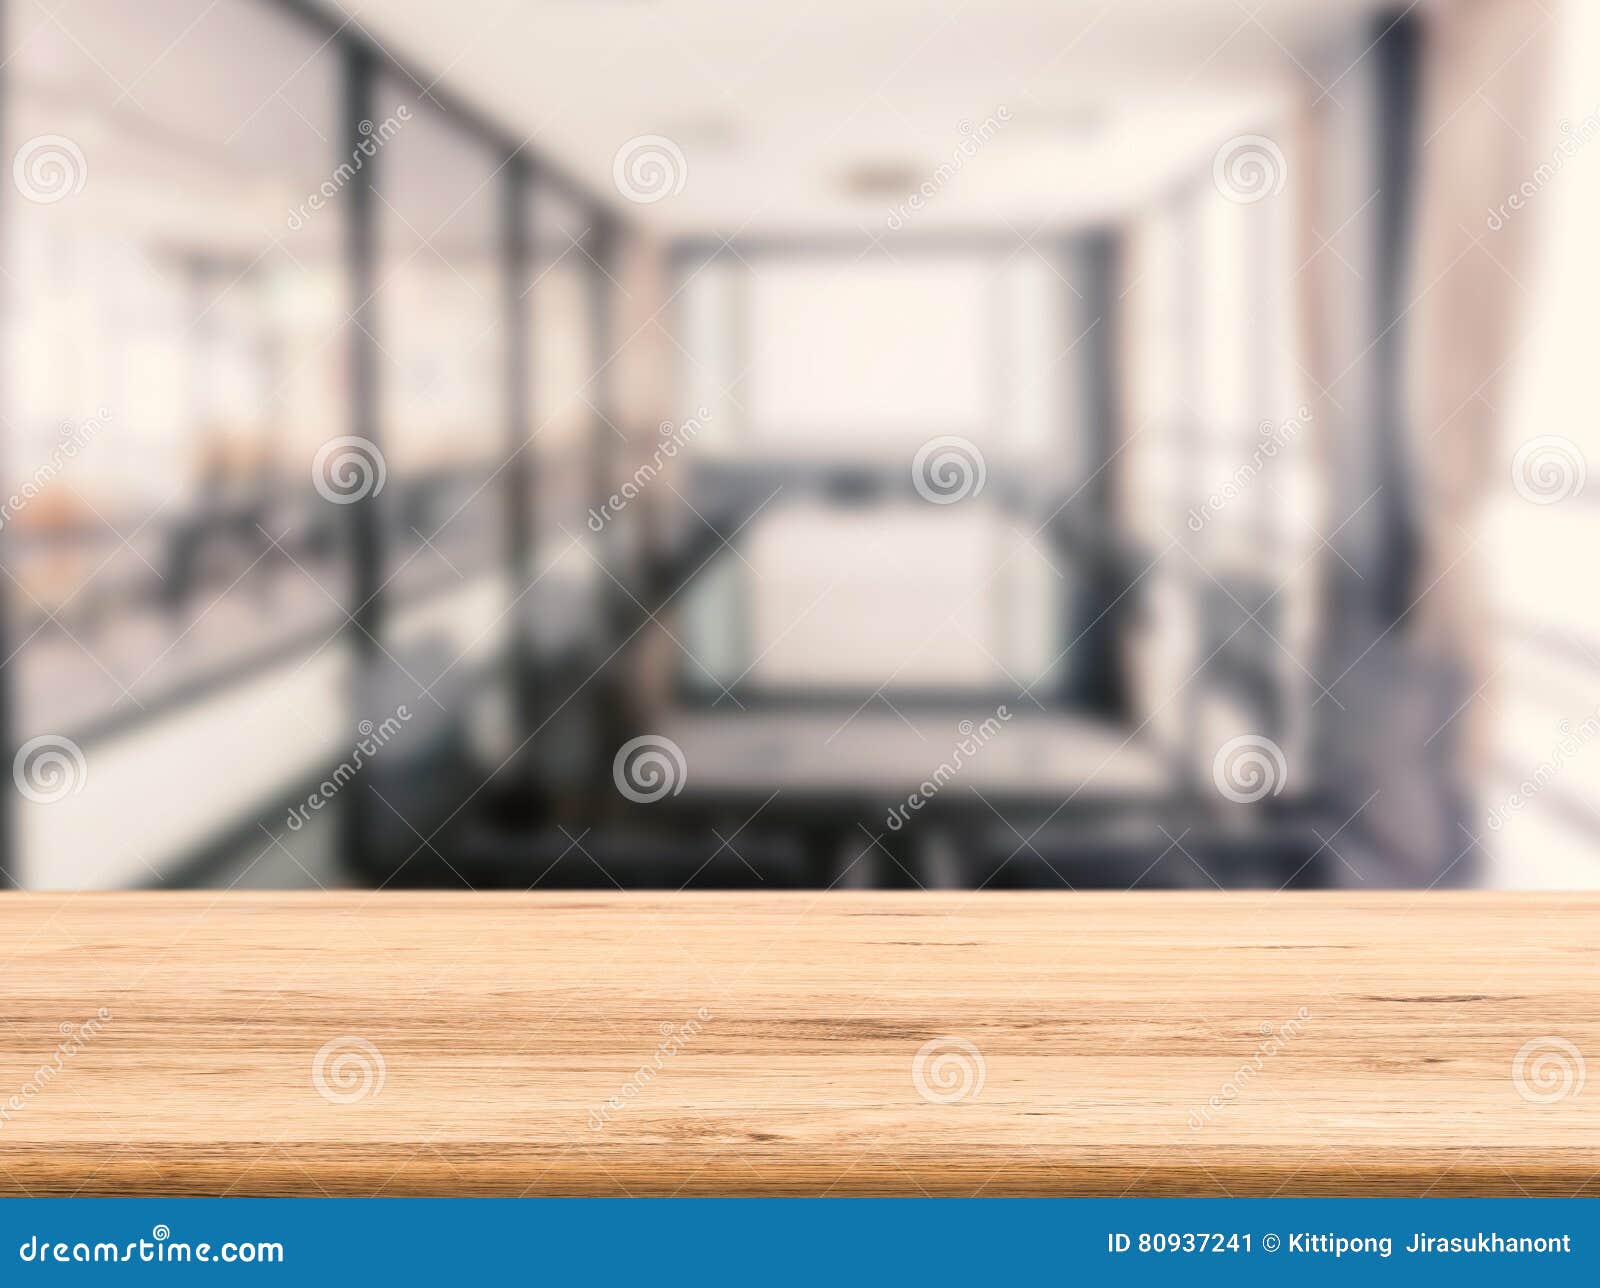 Bàn làm việc gỗ với hình nền văn phòng: Bạn cần một không gian làm việc thoải mái và đầy đủ năng lượng để hoàn thành công việc? Hãy xem ngay bức ảnh về bàn làm việc gỗ đầy trang trí với hình nền văn phòng. Thiết kế độc đáo và hợp thời trang này sẽ giúp bạn làm việc hiệu quả hơn và thư giãn tốt hơn.